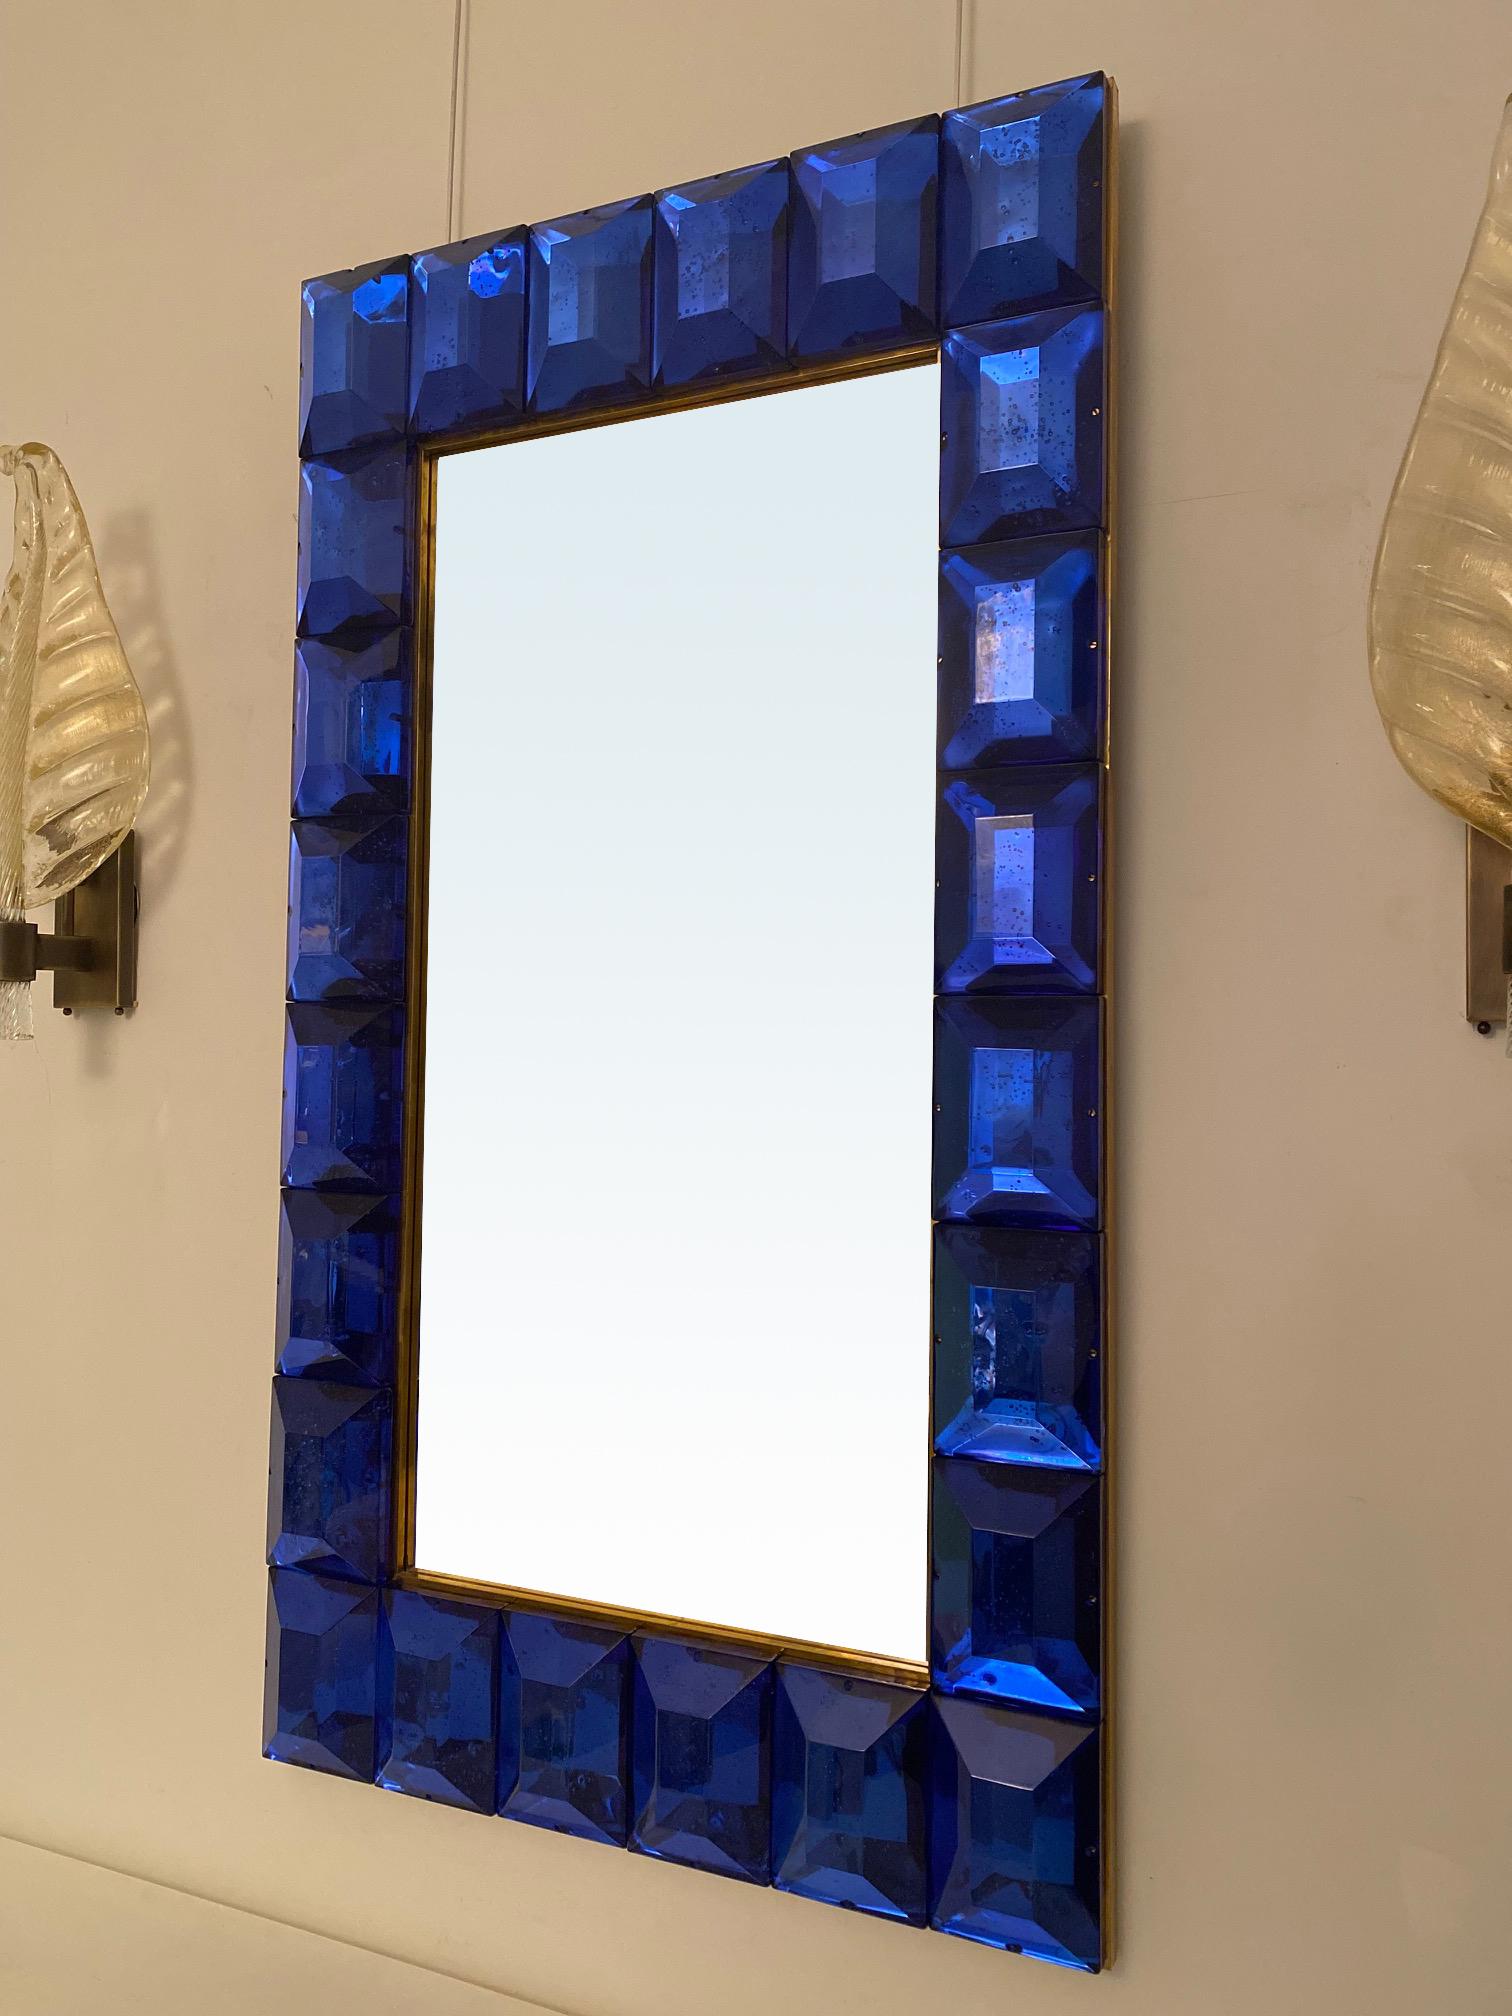 Grand miroir en verre de Murano bleu cobalt taillé en diamant.
Bloc de verre bleu cobalt vif et intense avec des inclusions d'air naturelles dans tout le bloc.
Motif à facettes hautement poli
Galerie de laiton
Produits de luxe fabriqués à la main